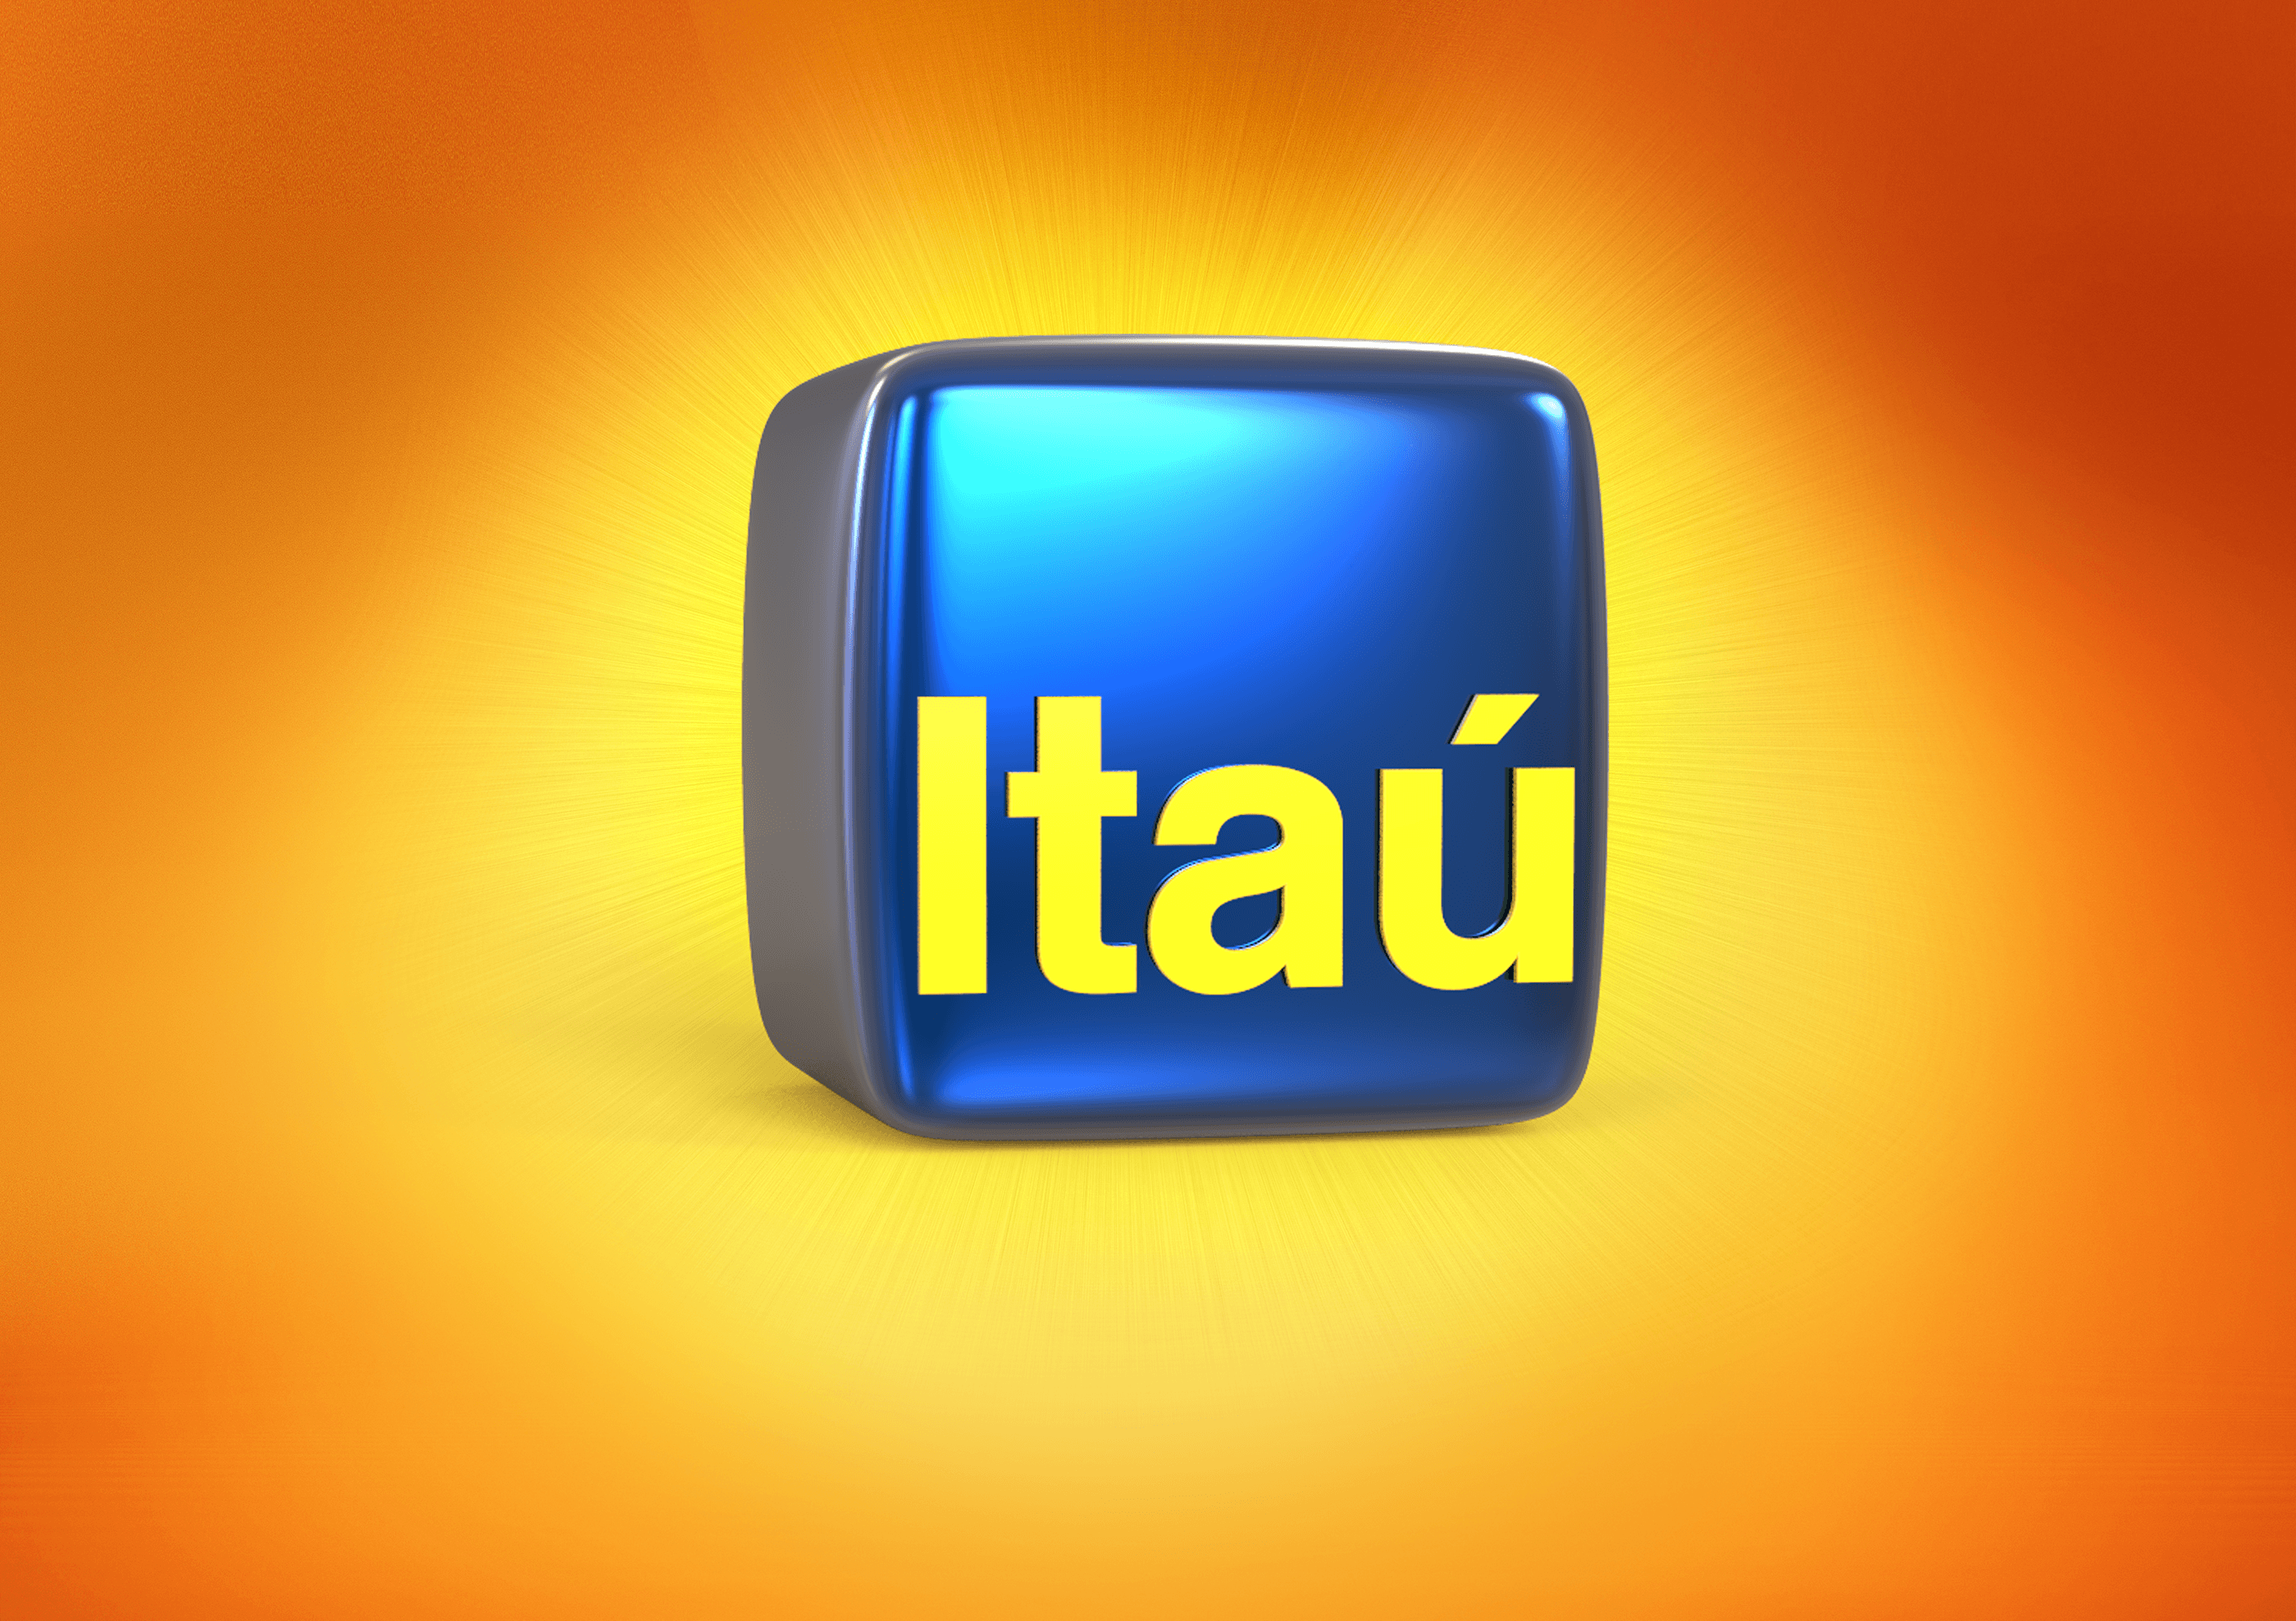 Itau Logo - ITAÚ - LOGO 3D - ESTUDOS DE CINEMA 4D on Behance